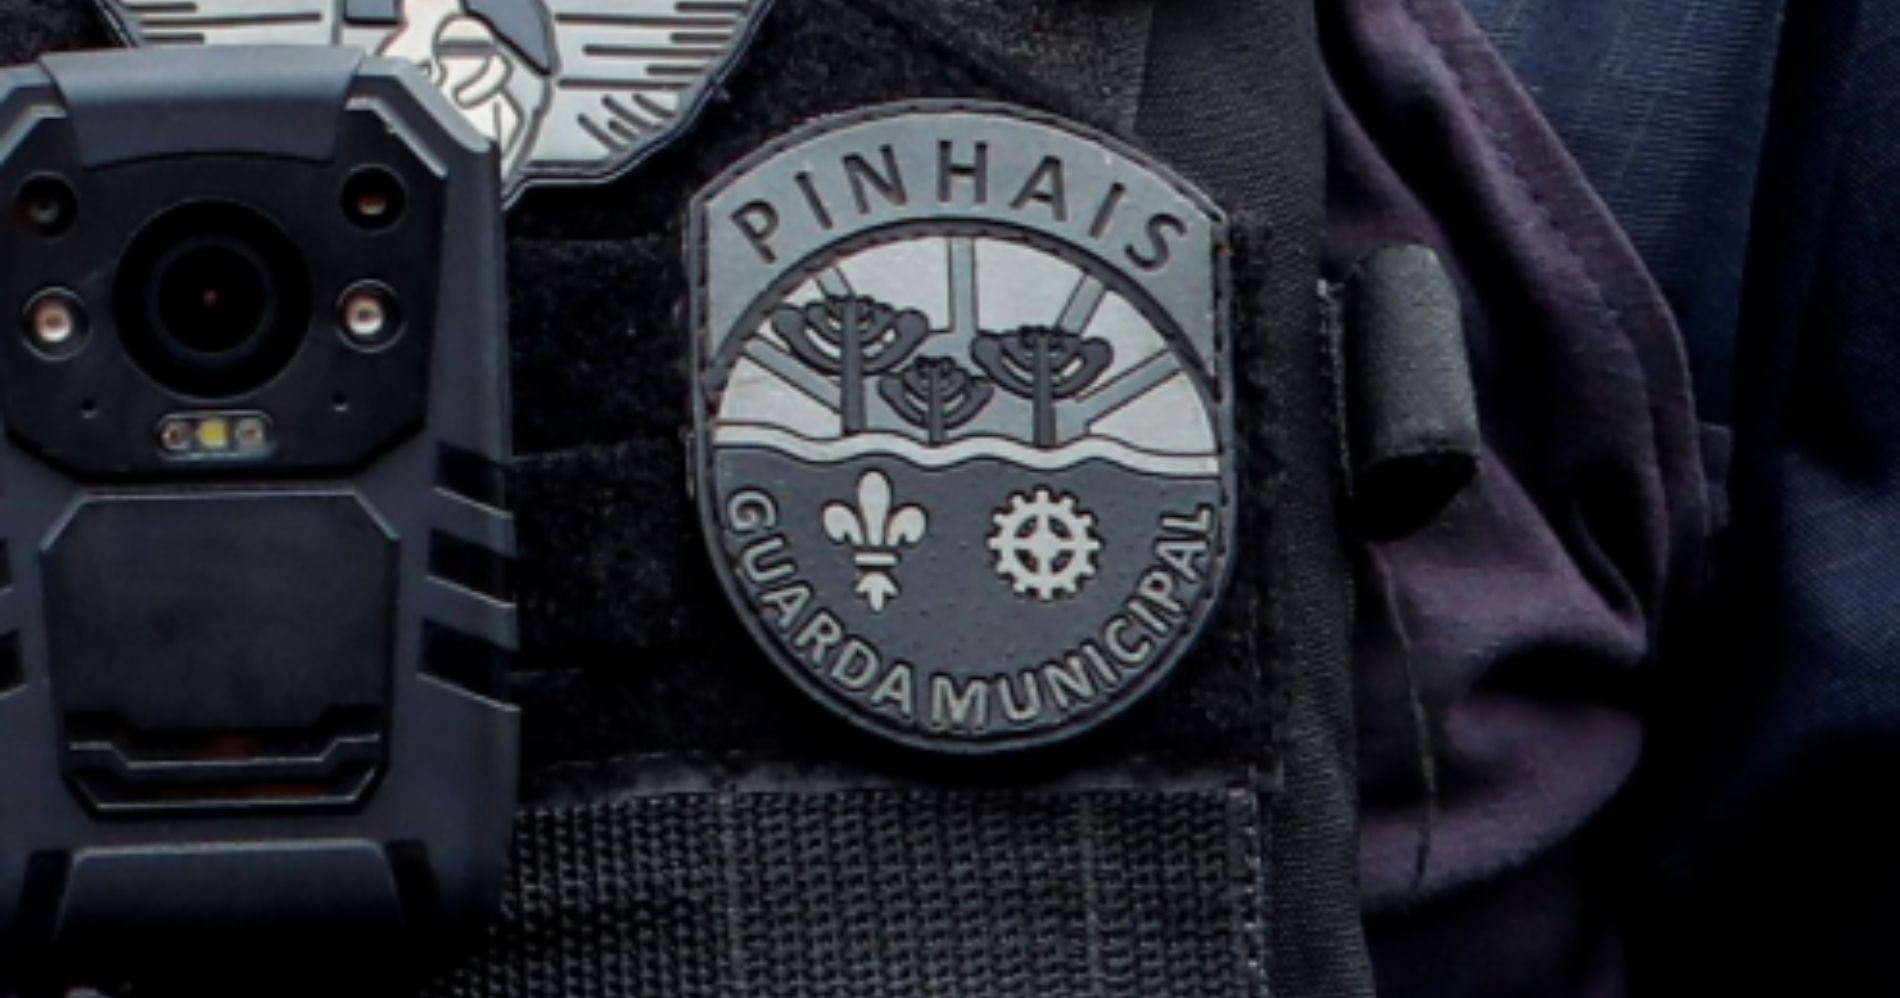 Guarda Municipal de Pinhais participa de ação contra quadrilha de clonagem de veículos